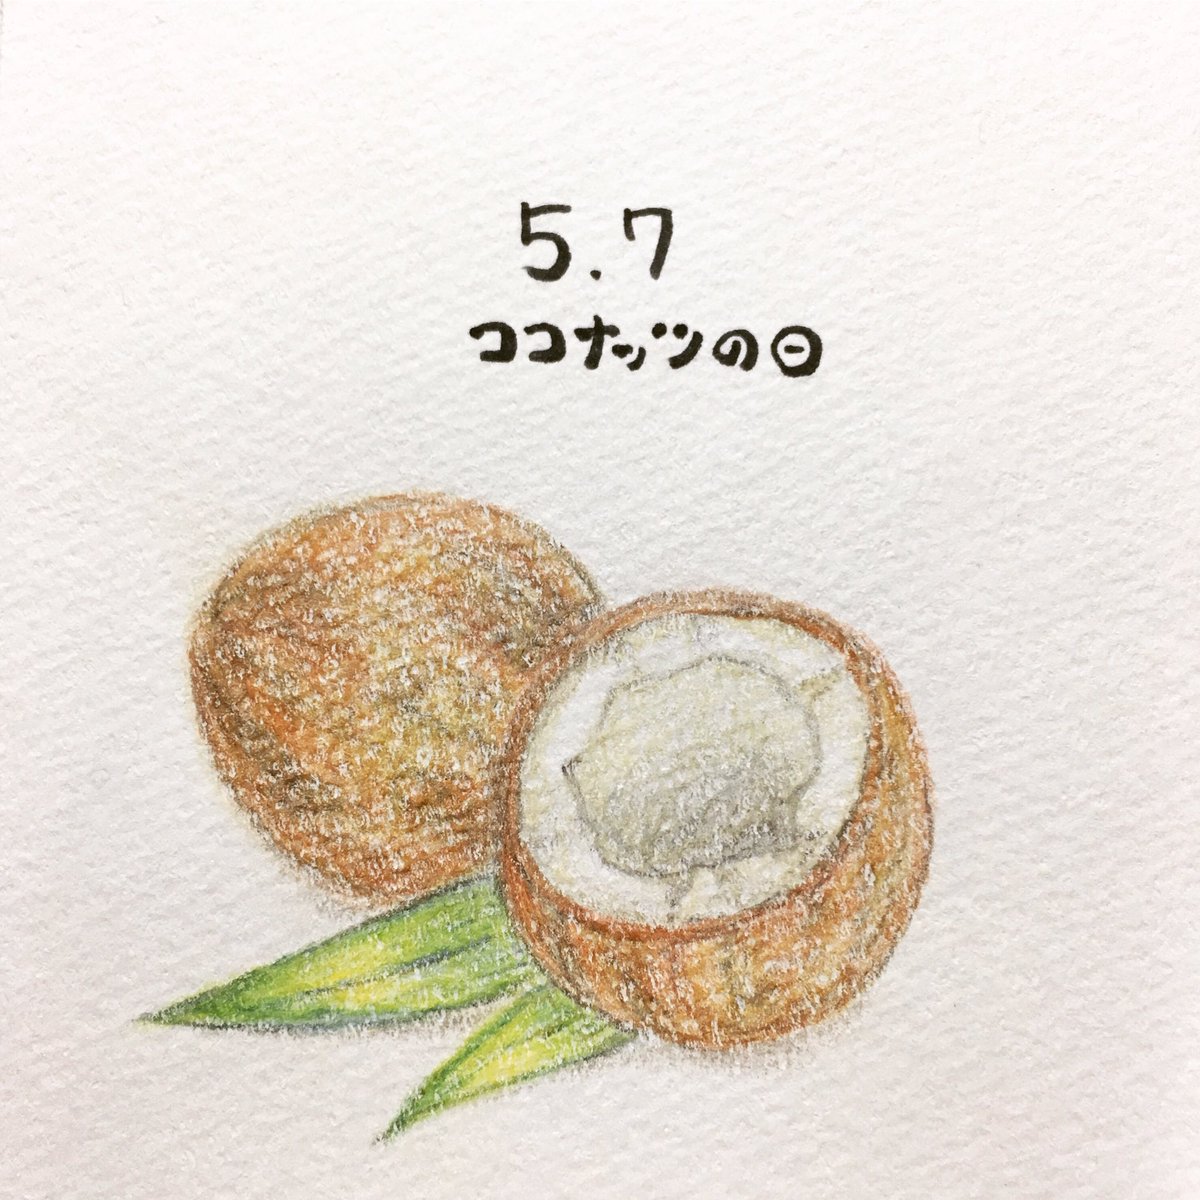 日めくり 手書きイラストレーター 19年5月7日 ココナッツの日 語呂にちなんで記念日に ココナッツミルクの入ったグリーンカレーが食べたくなりました ココナッツ イラスト